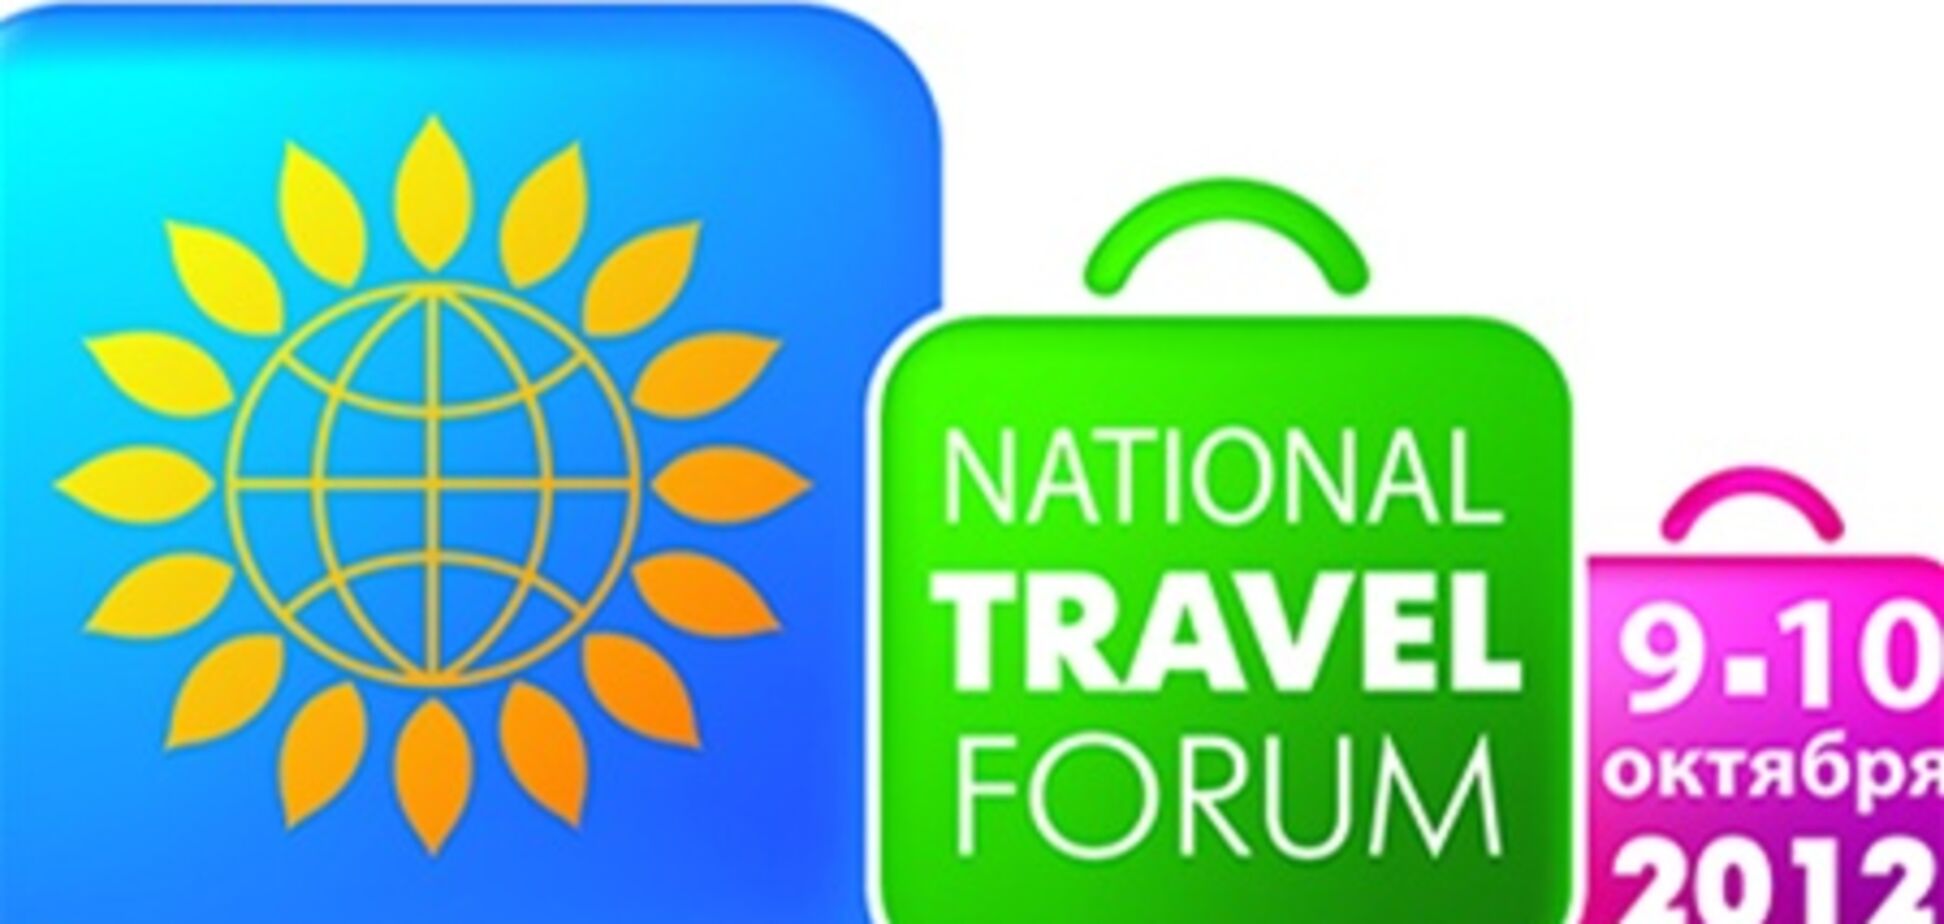 Национальный туристический форум состоится 9-10 октября